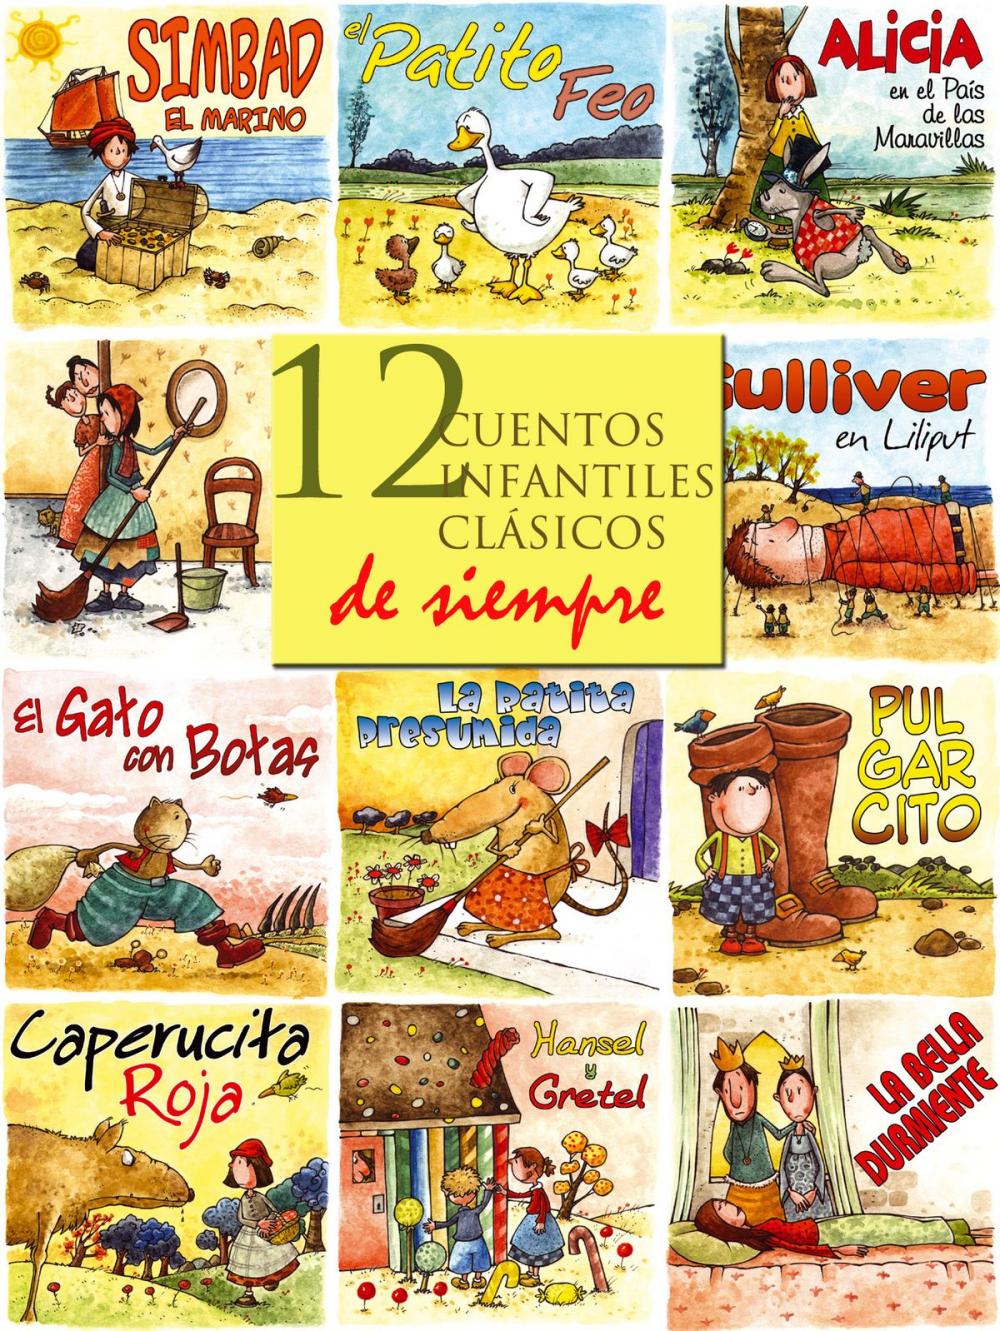 Big bigCover of 12 cuentos infantiles clásicos de siempre